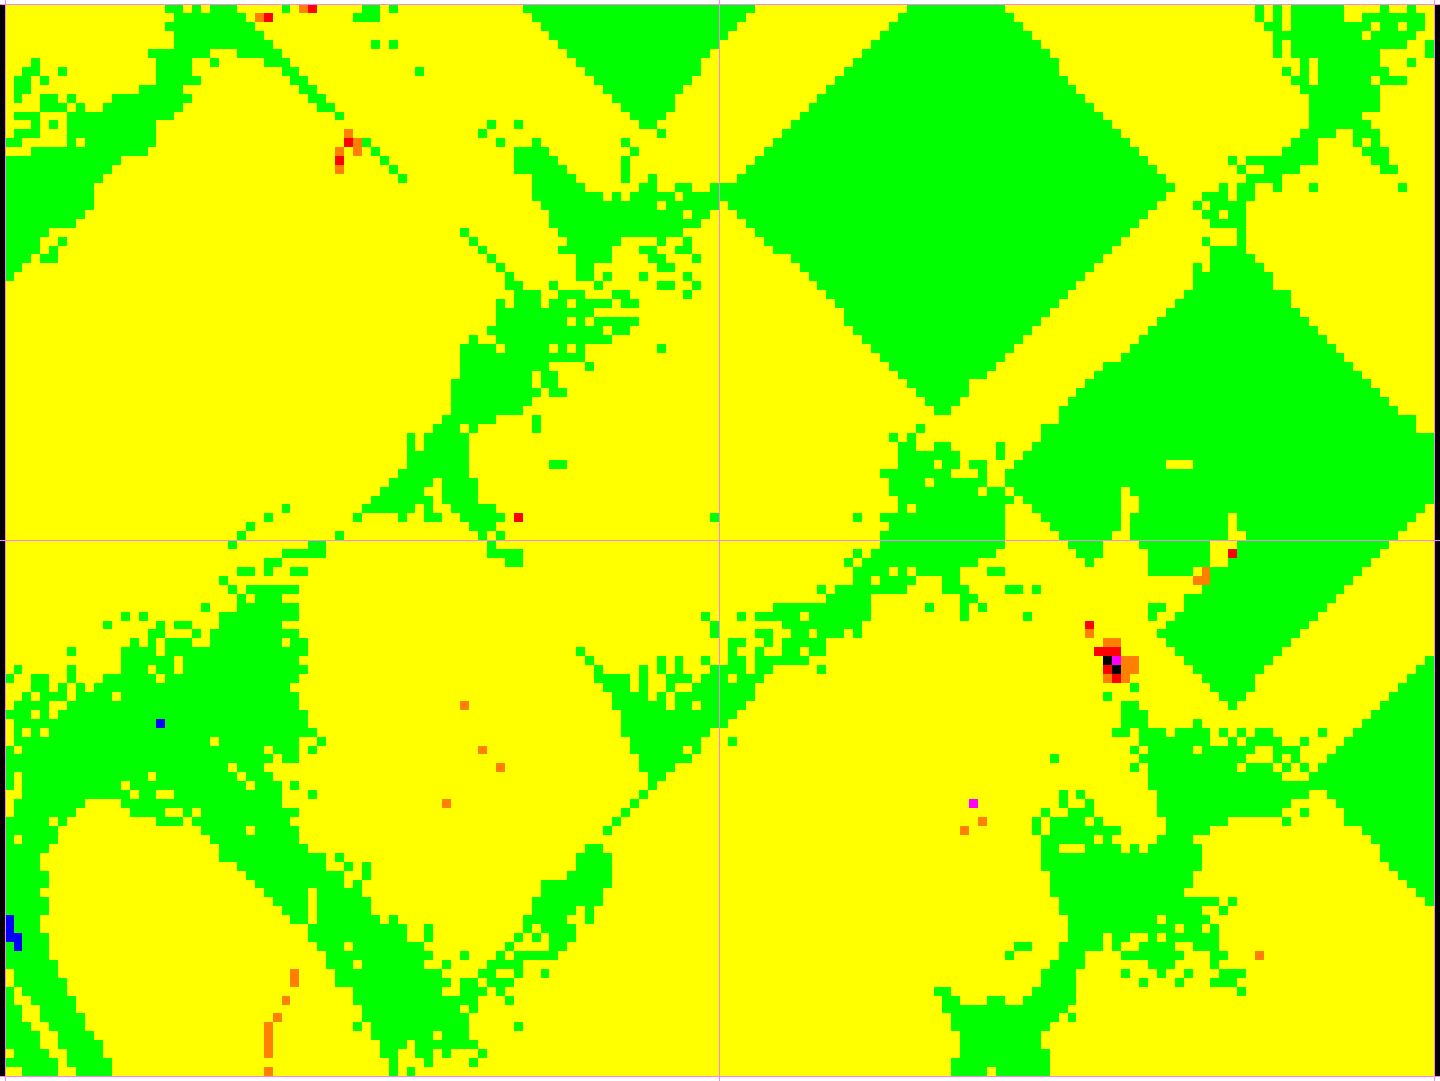 13.4 Bildefil som viser punkttetthet (alle punkter) For hvert prosjektområde skal det leveres en georeferert (sosi-fil) bildefil på tiff-format som viser punktettheten i laserdataene.